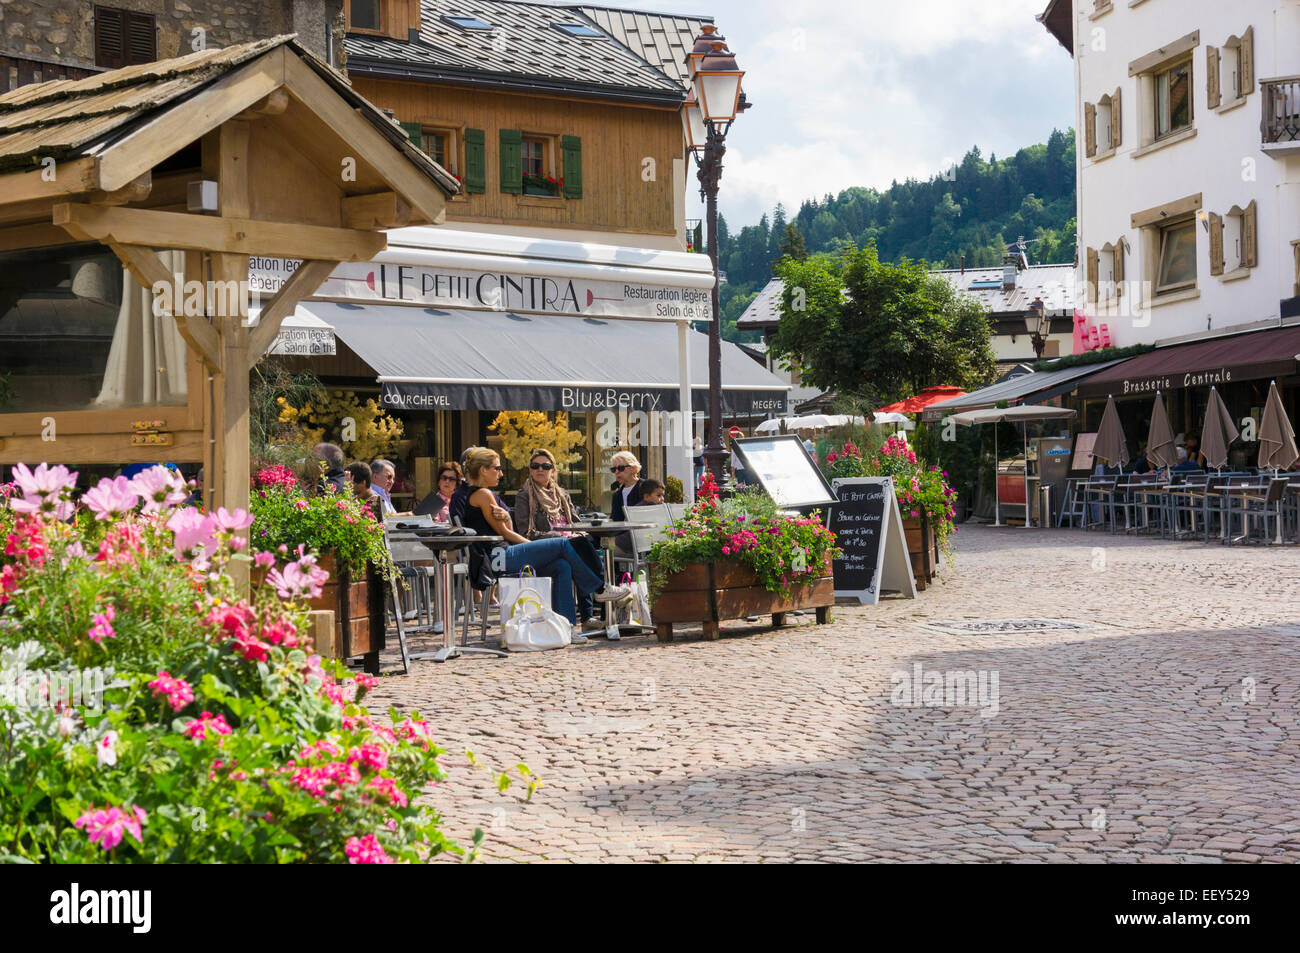 Menschen in einem Café in der Ski resort Stadt Megeve, Französische Alpen, Haute-Savoie, Frankreich, Europa im Sommer Stockfoto